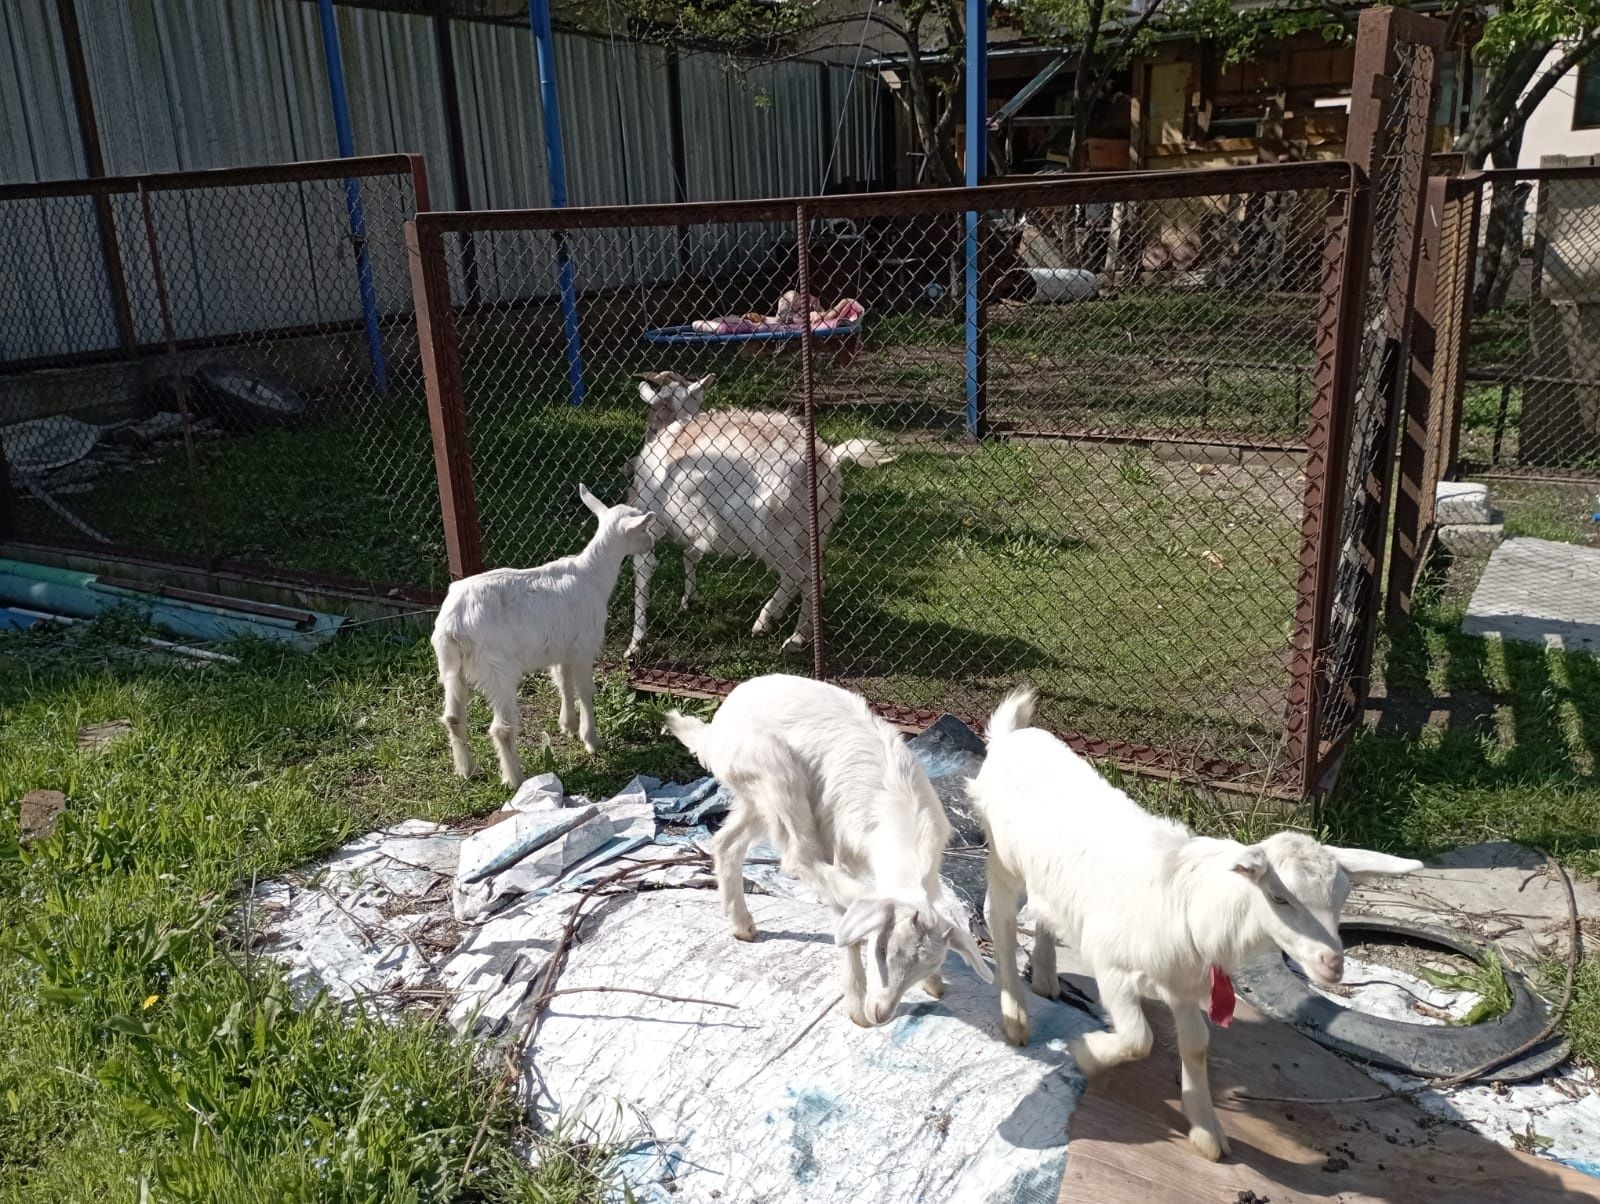 Продается коза с тремя козлятами.